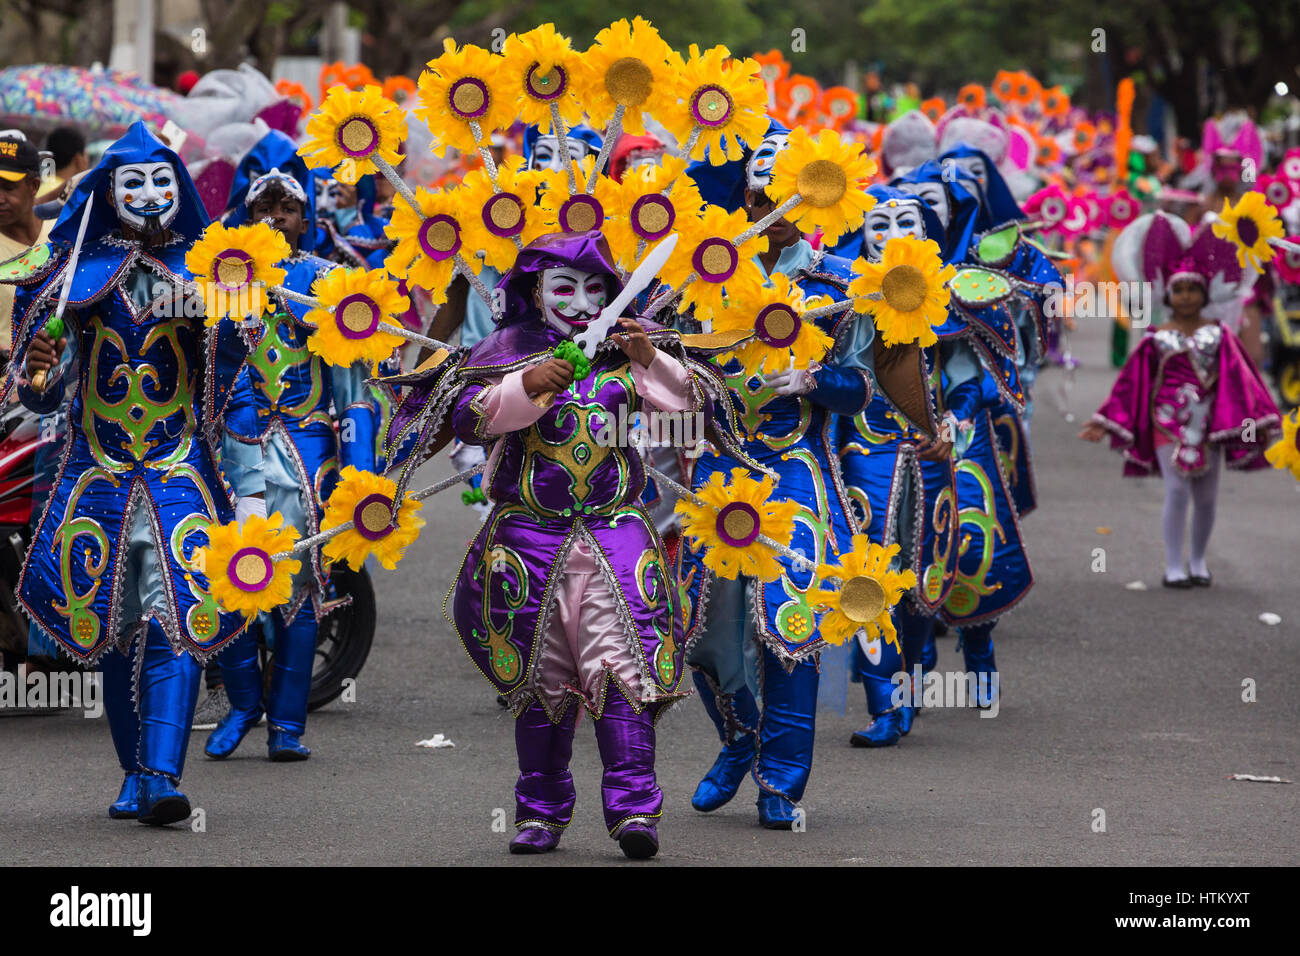 Schwertkämpfer in Sonnenblumenöl Kostüme in La Vega Karnevalsumzug. Die  erste dokumentierte Karneval Feier in, was jetzt der Dominikanischen  Republik war h Stockfotografie - Alamy